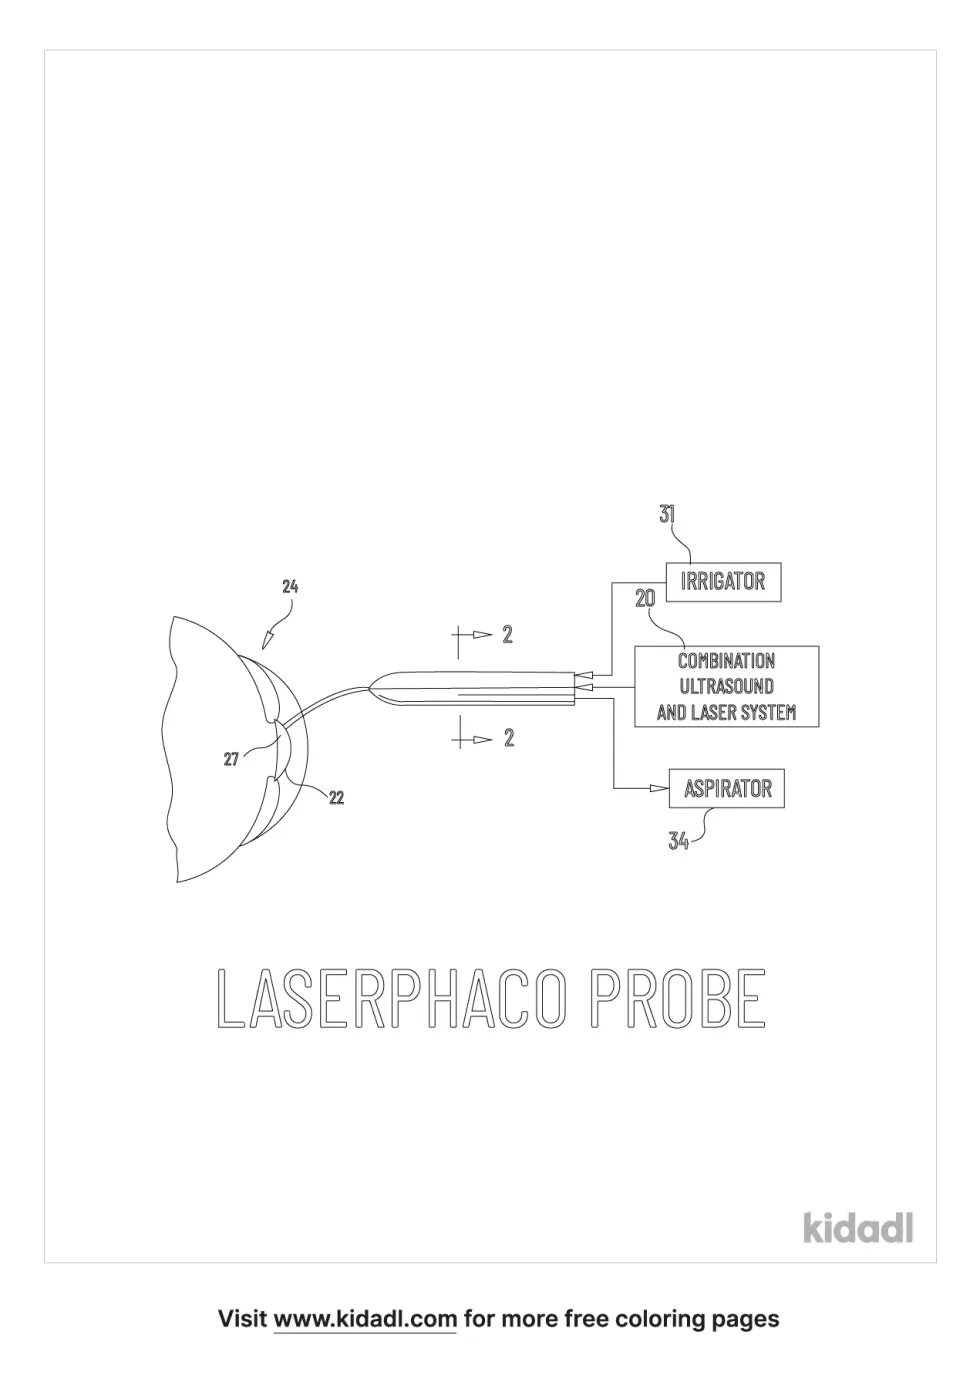 Laserphaco Probe